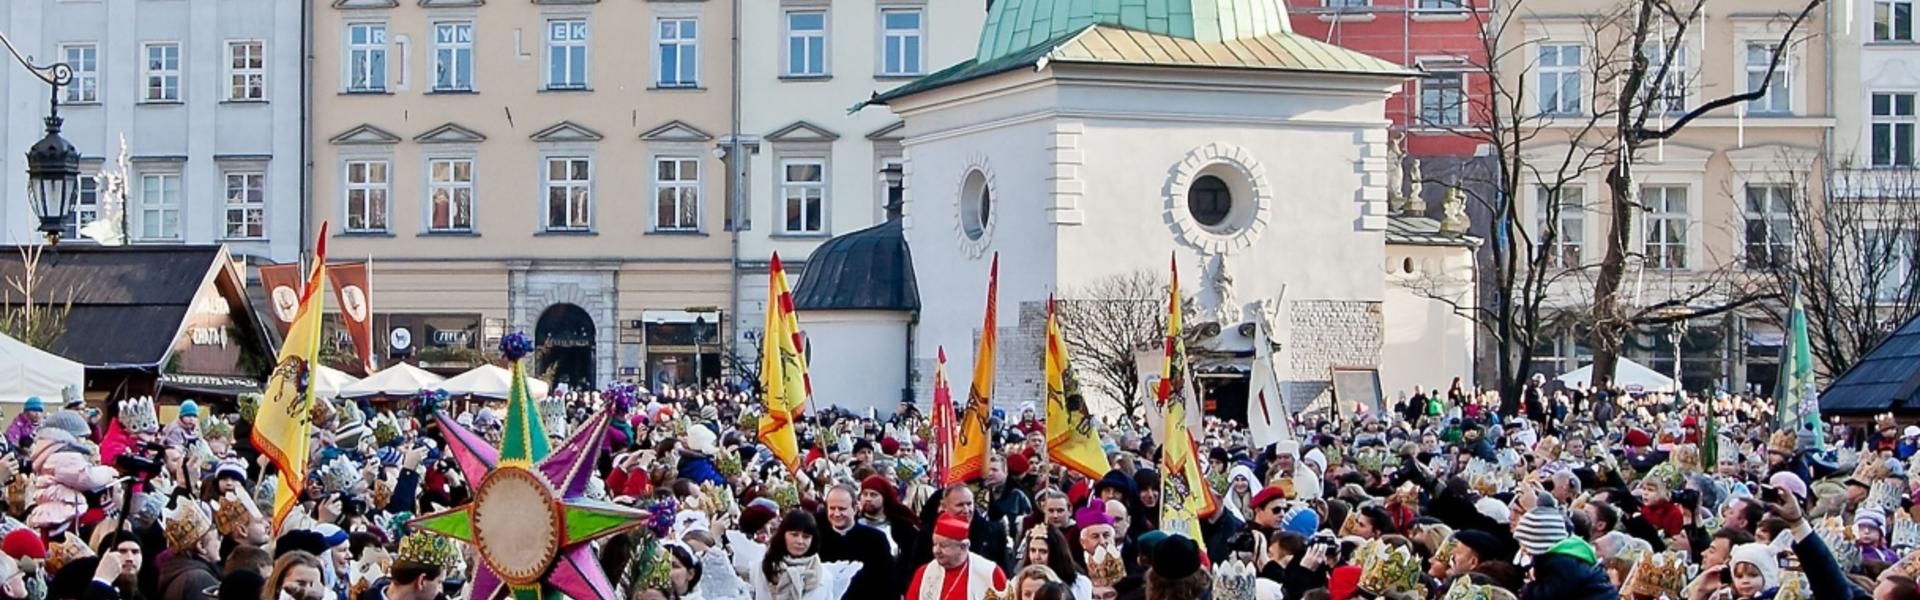 Tłum ludzi podczas procesji na rynku w Krakowie